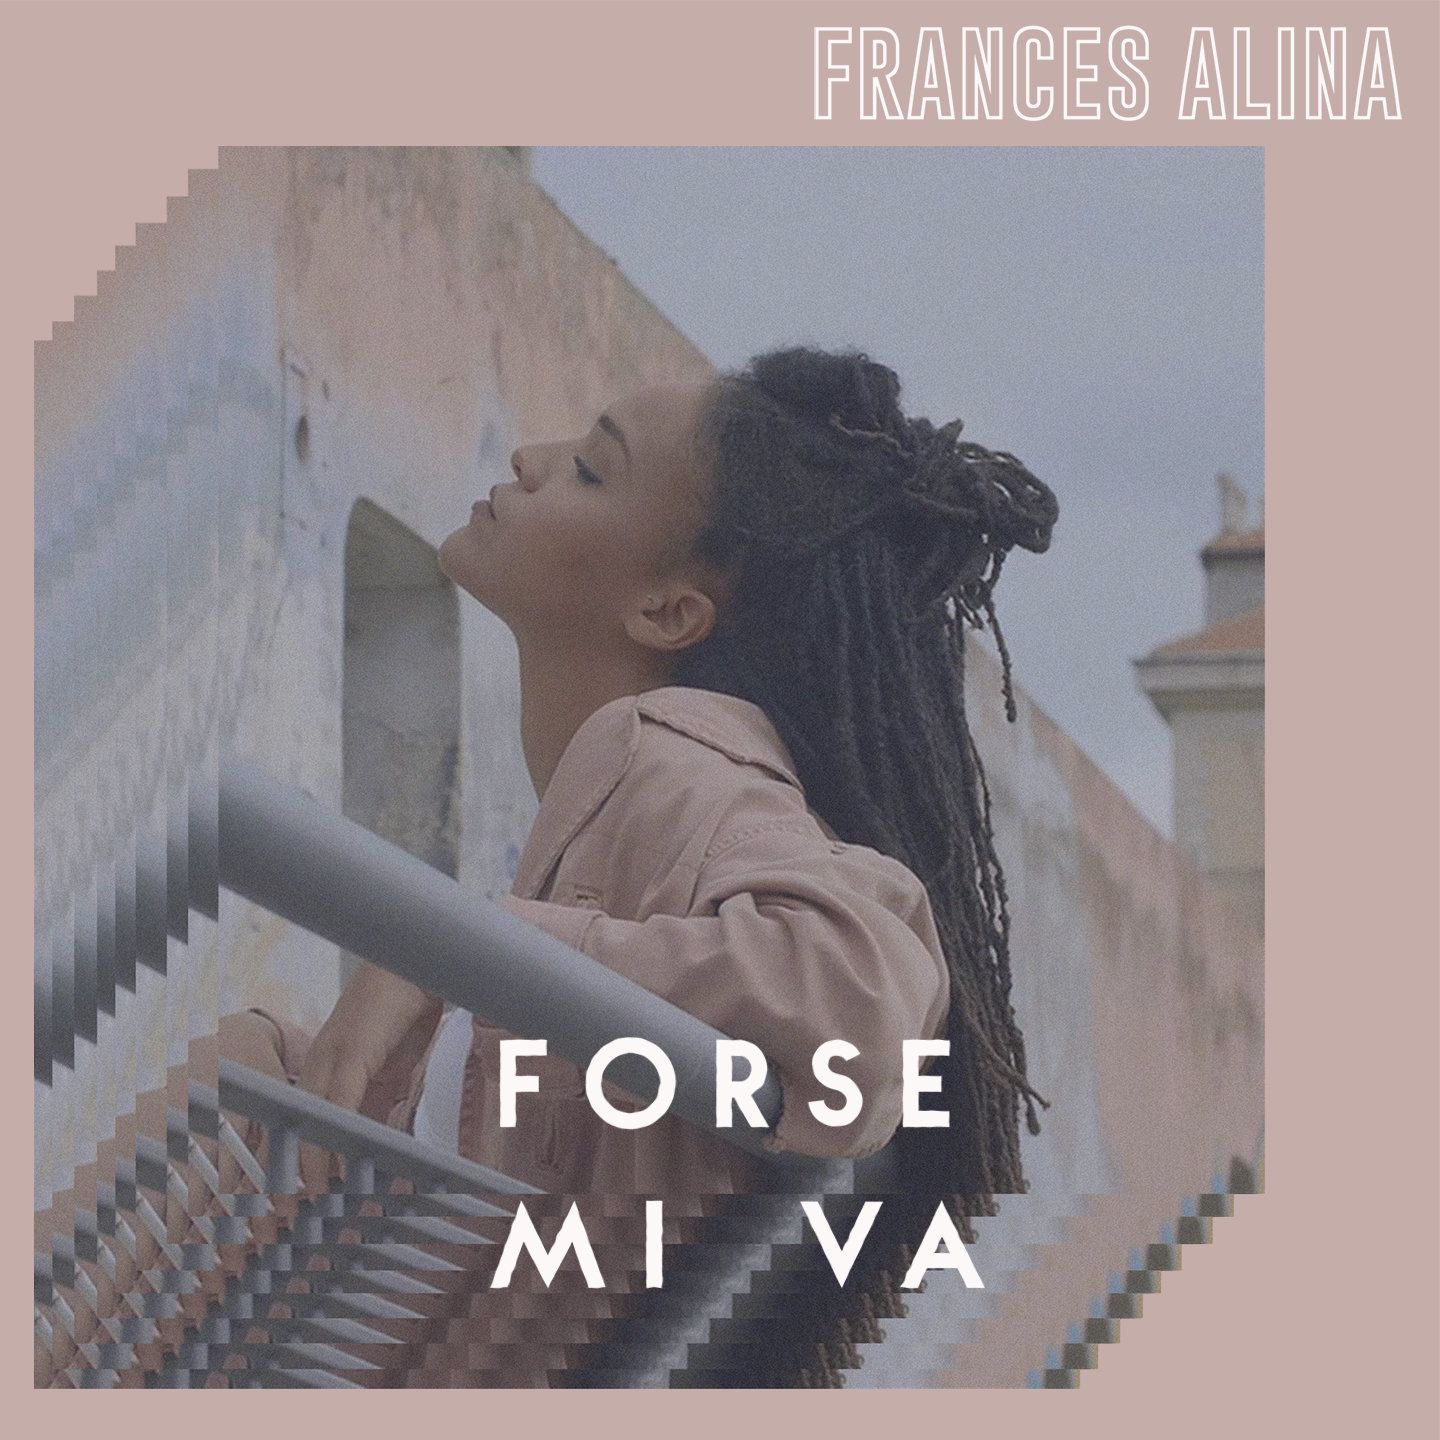 FRANCES ALINA • FORSE MI VA è il nuovo video in uscita per Platonica/UMA Records